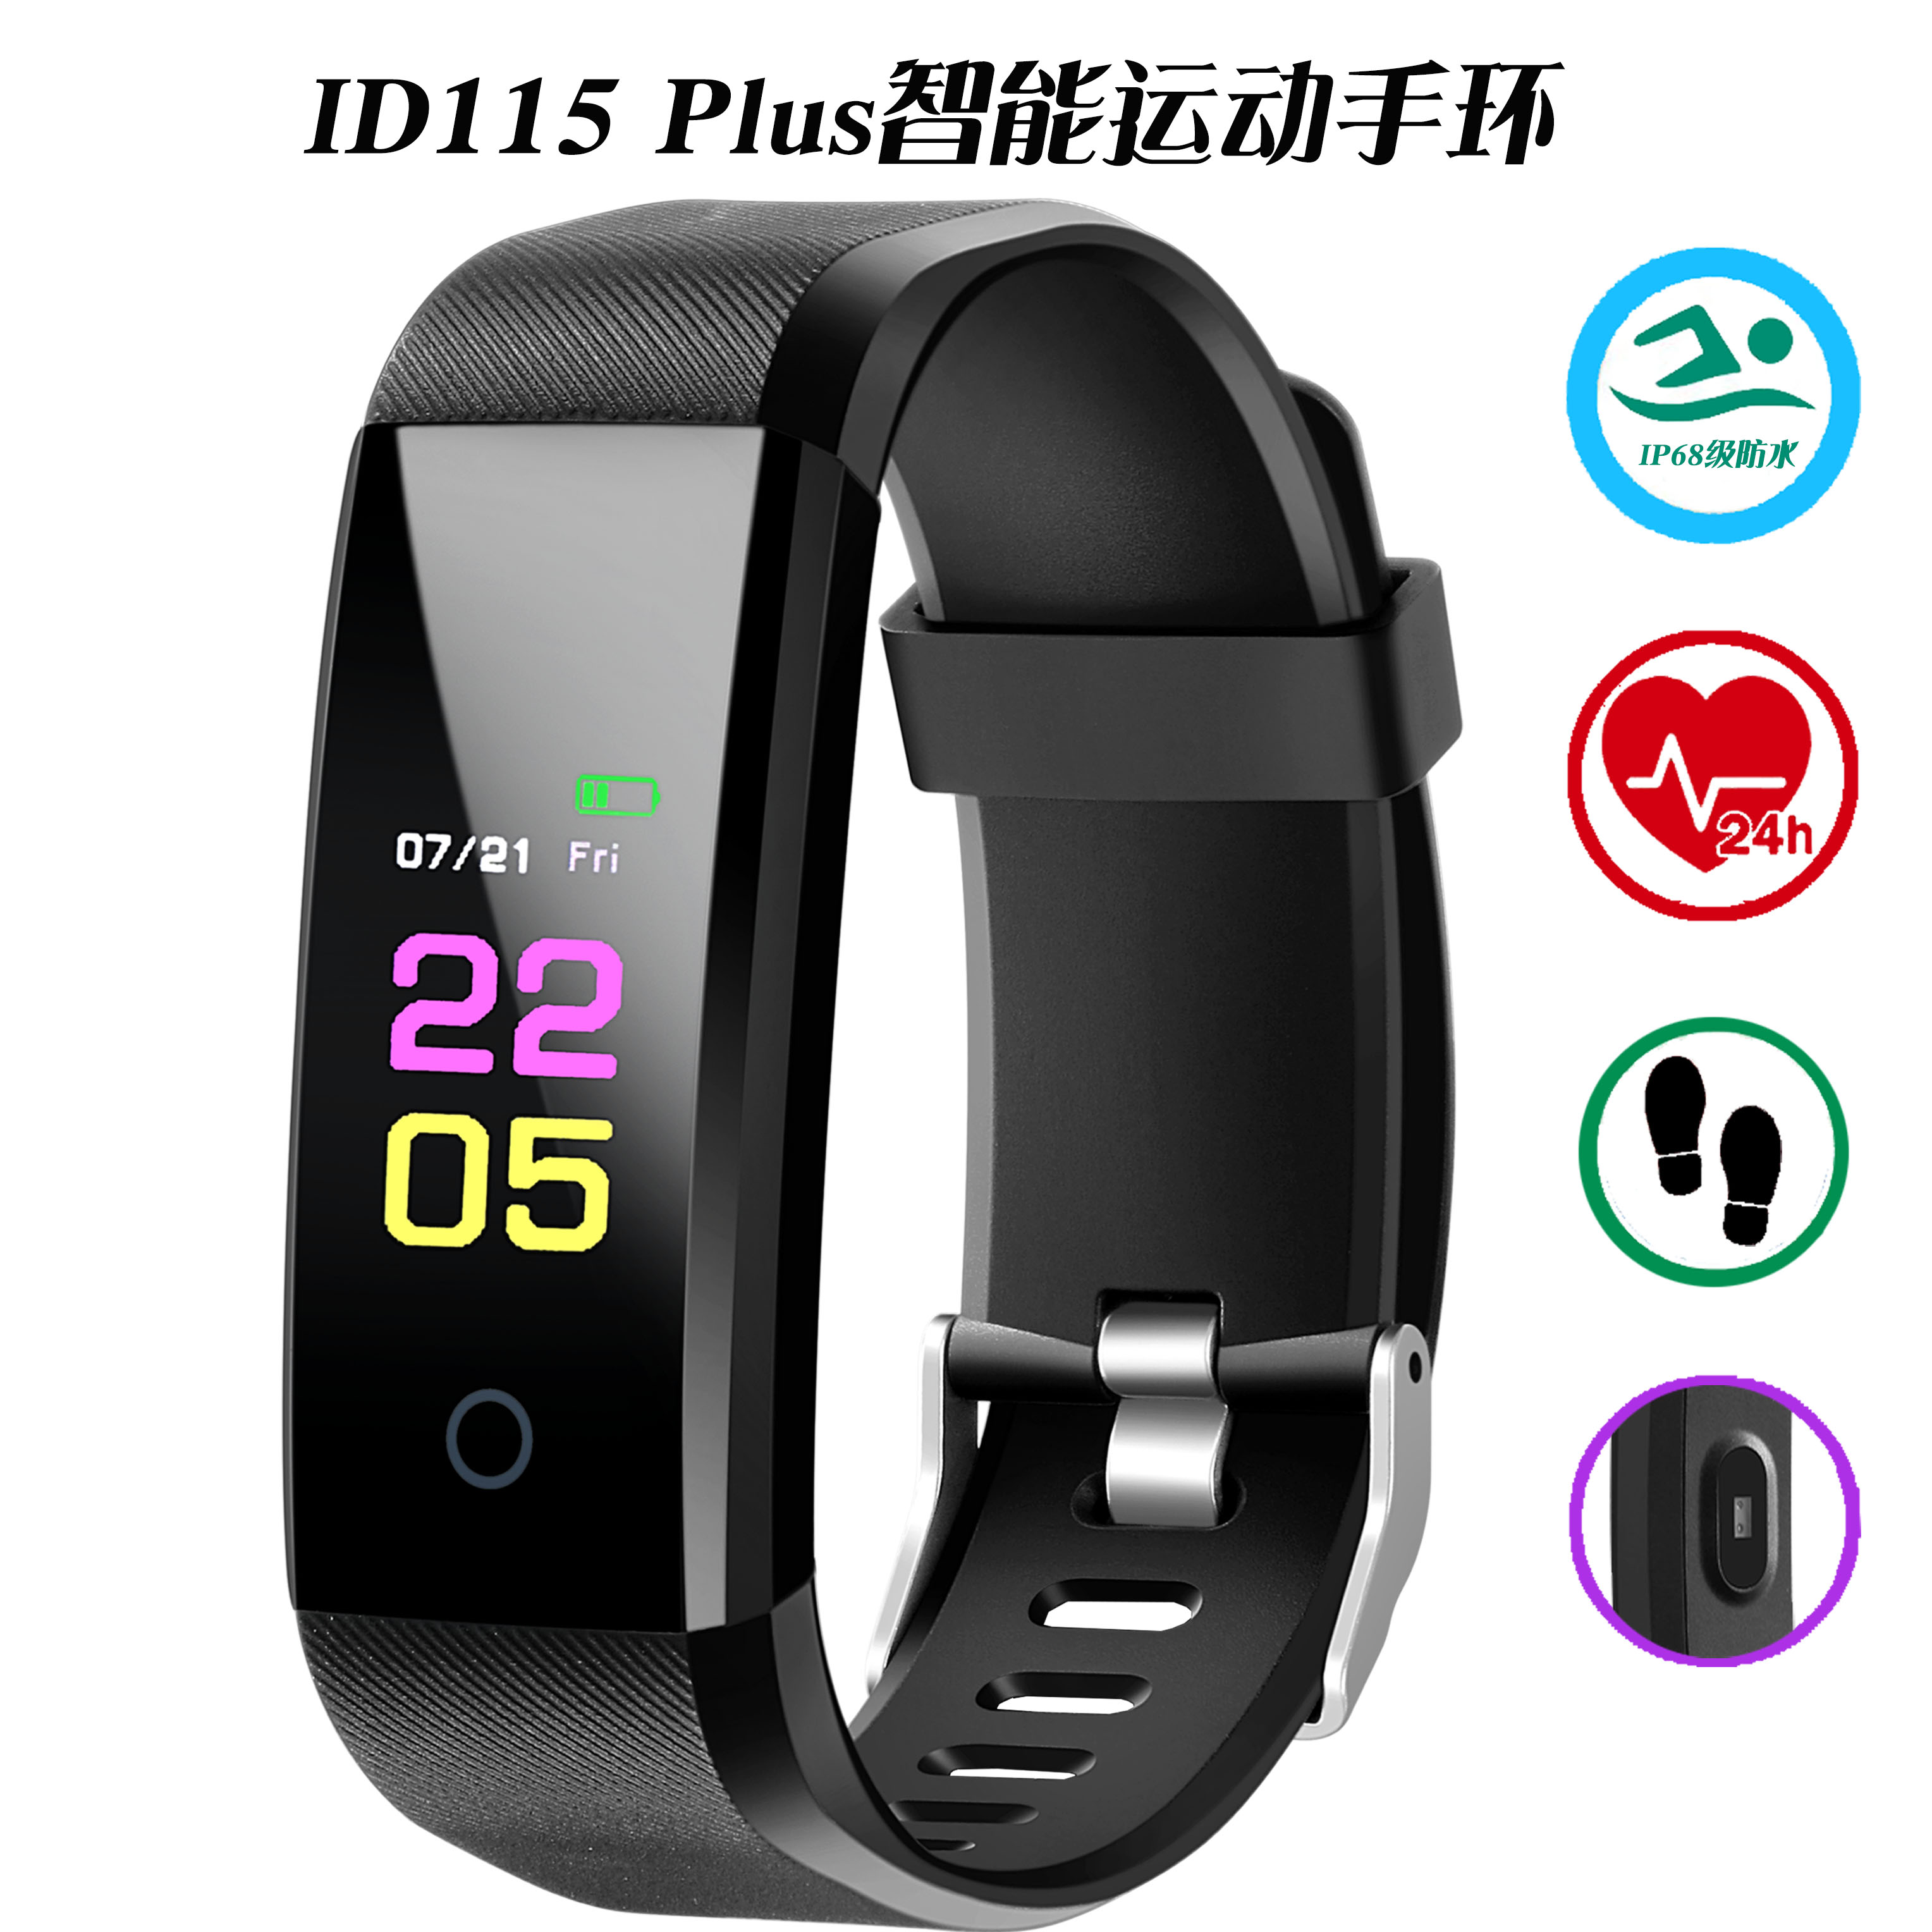 ID115 plus智能手环 新款B05心率手环 smart bracelet运动计步器信息提醒图片